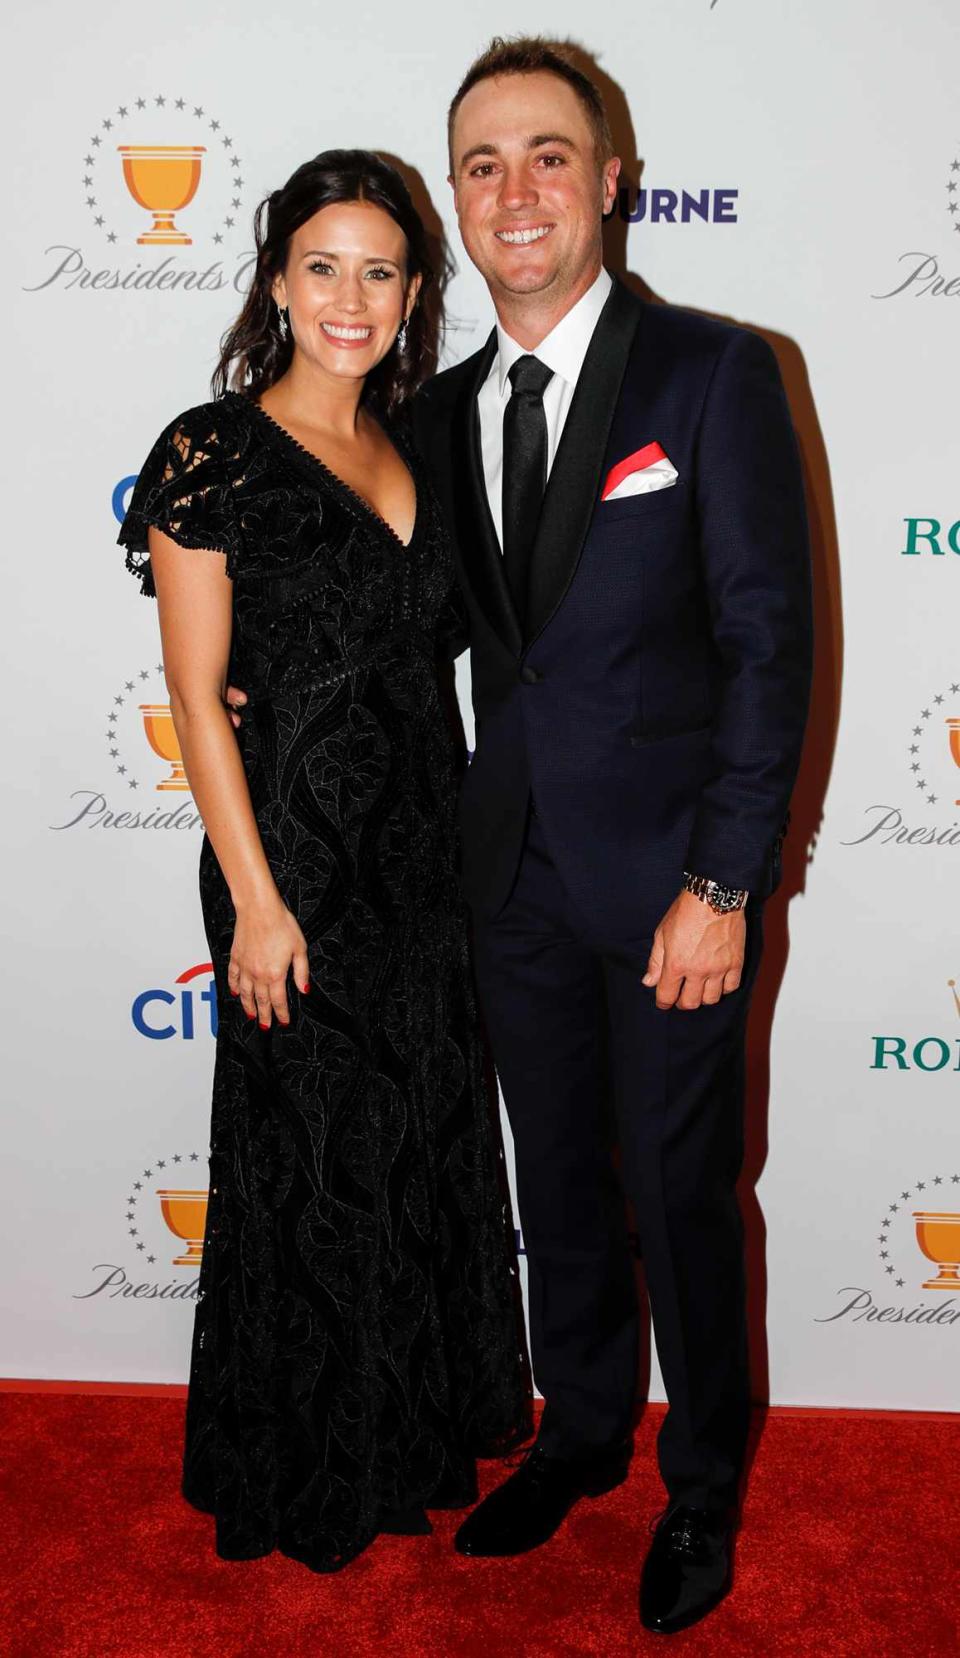 Justin Thomas y su compañera Jillian Wisniewski en la alfombra roja antes de la Copa Presidentes en el Royal Melbourne Golf Club el 10 de diciembre de 2019 en Melbourne, Australia